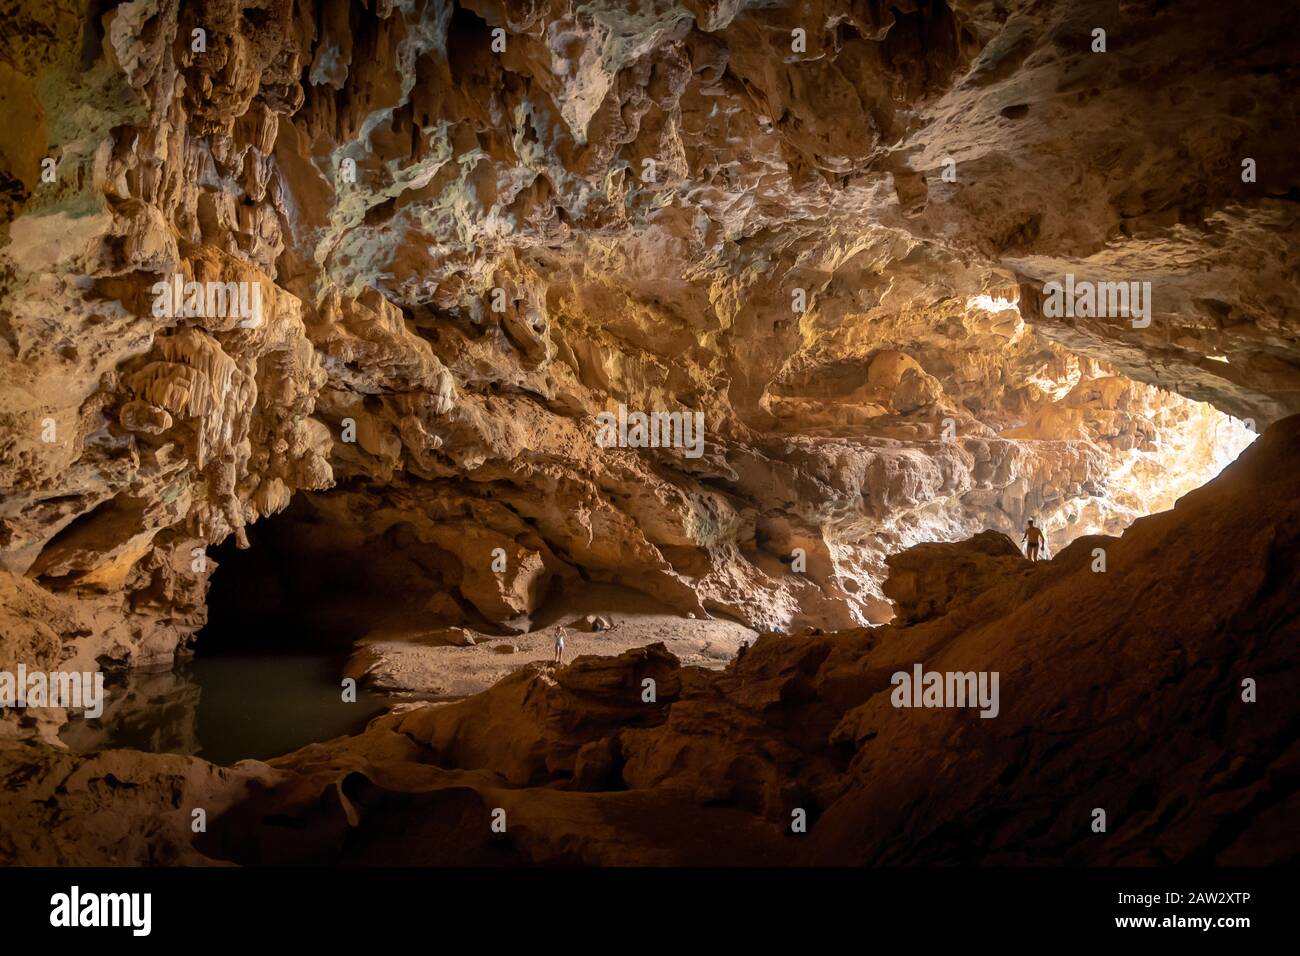 Grotte de Xieng Liap, boucle de Thakhek, Laos Banque D'Images